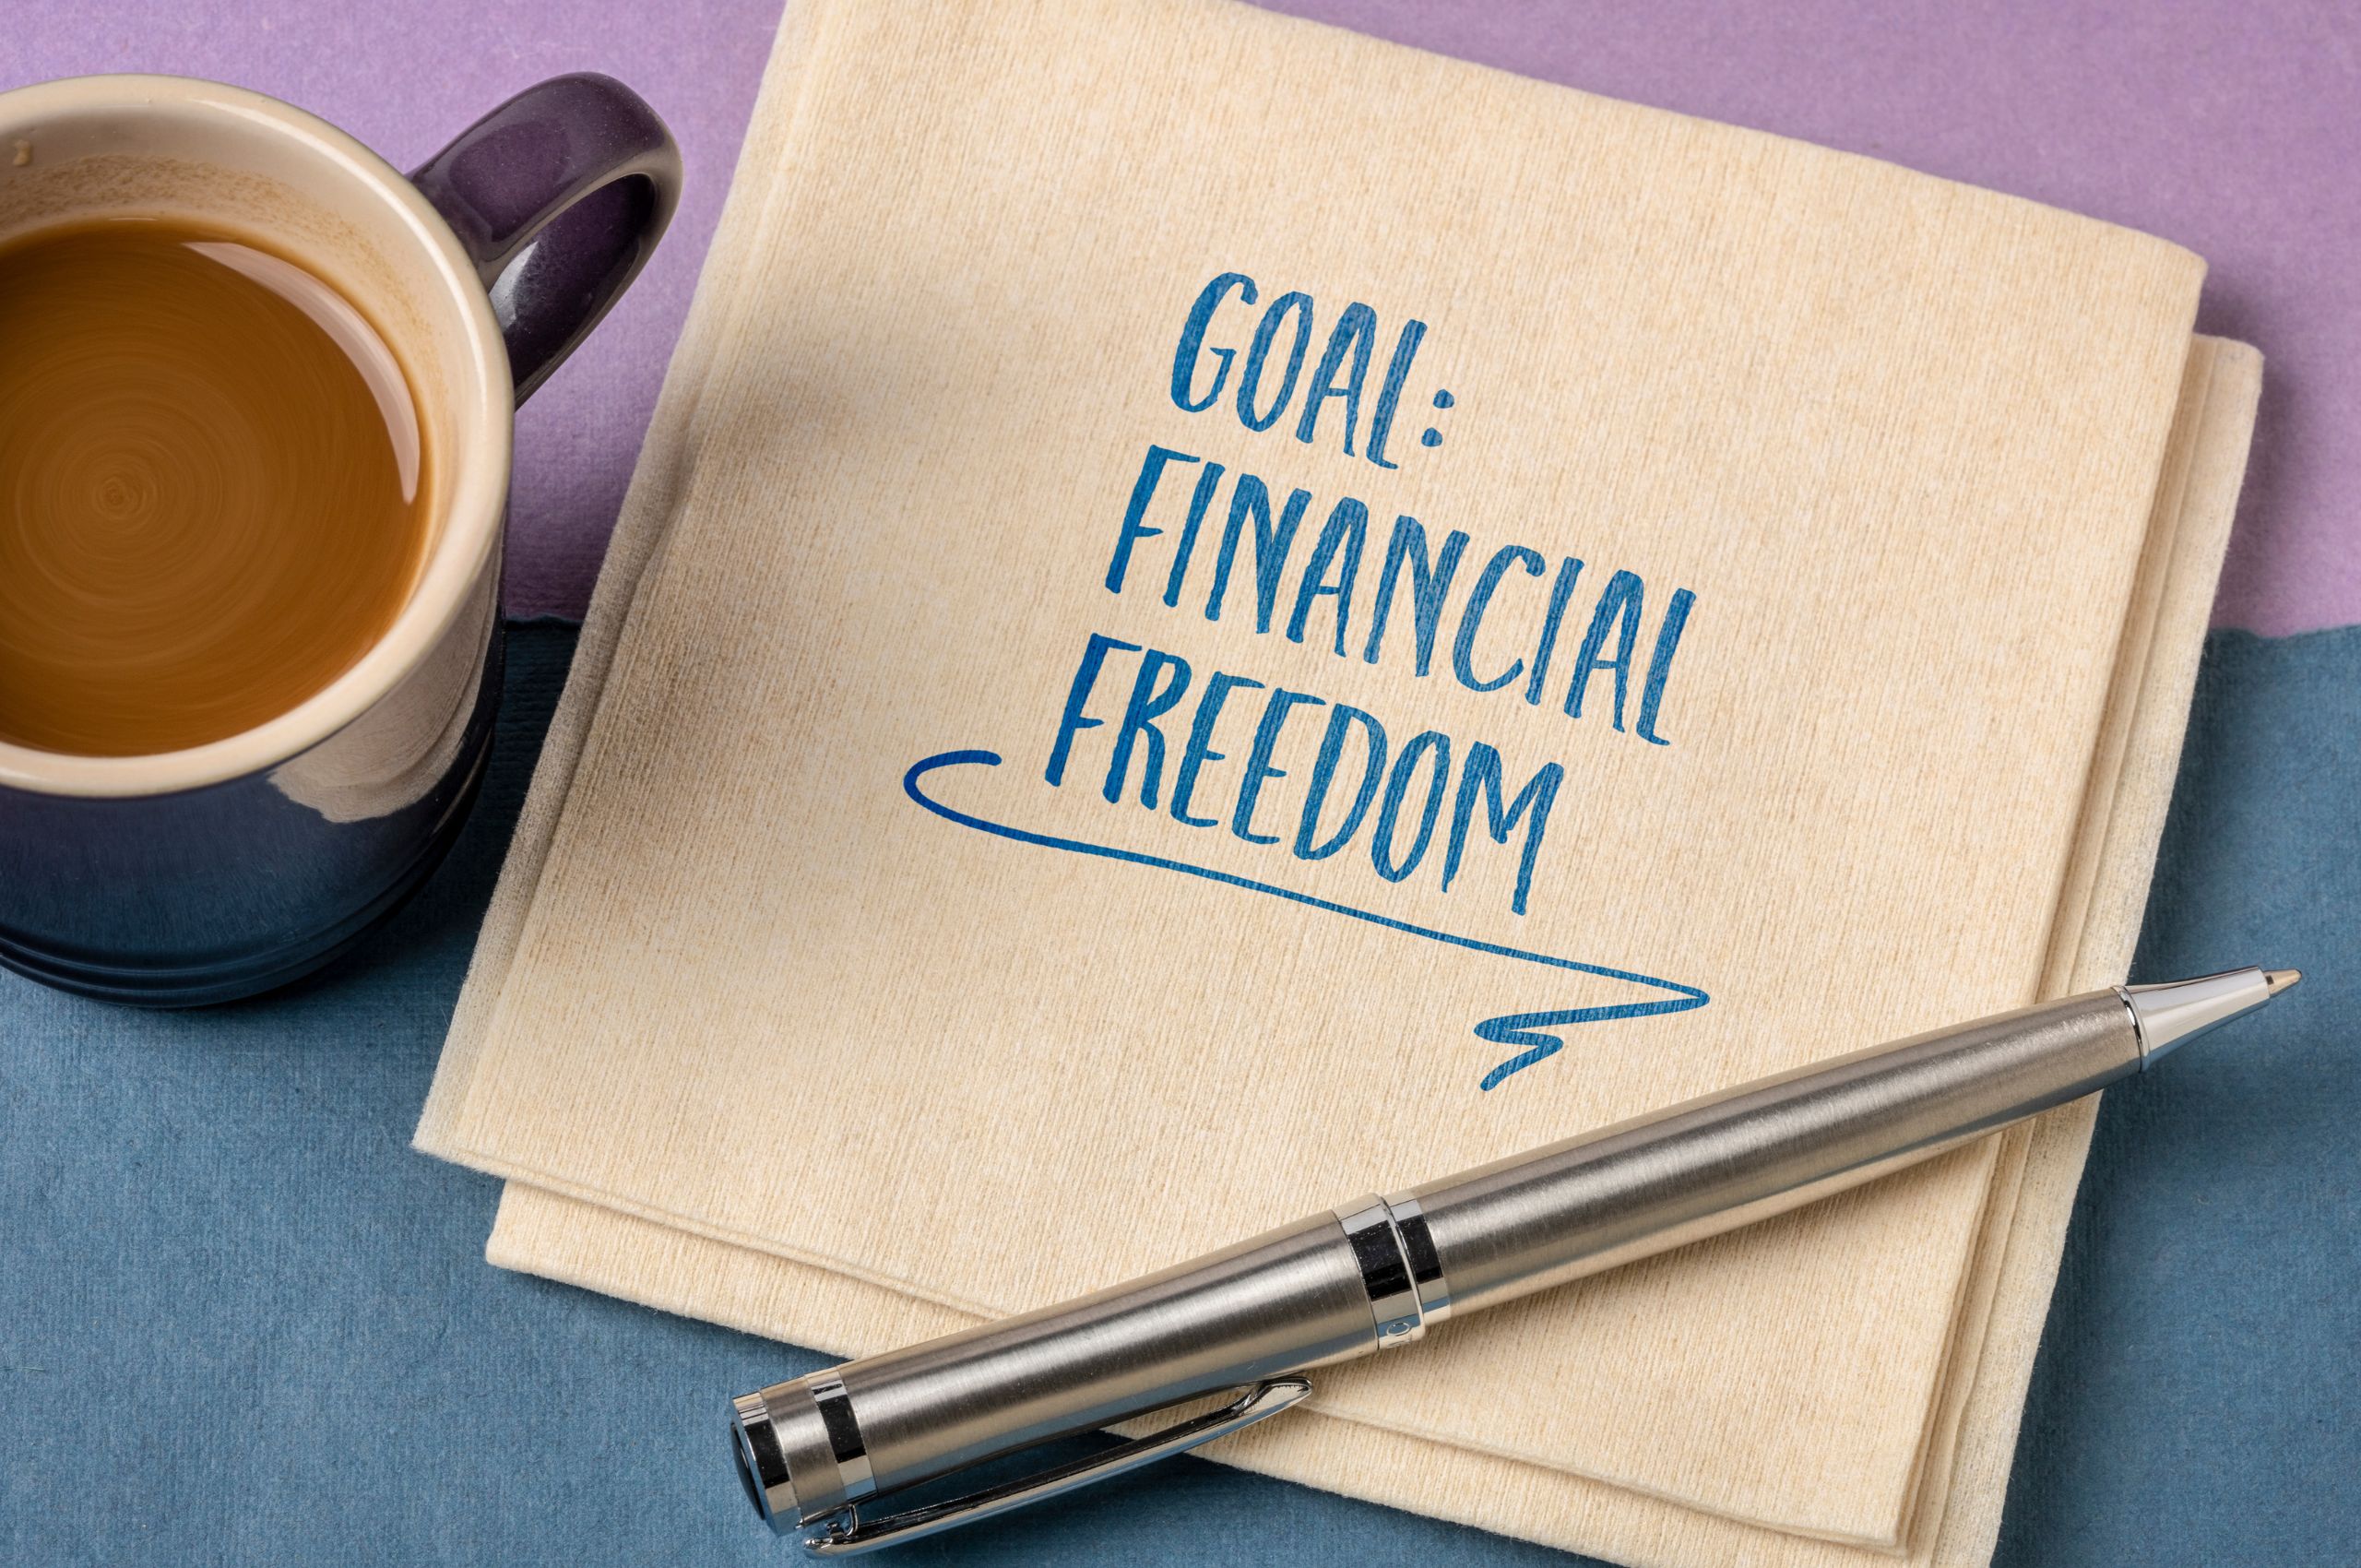 Goal: Financial Freedom